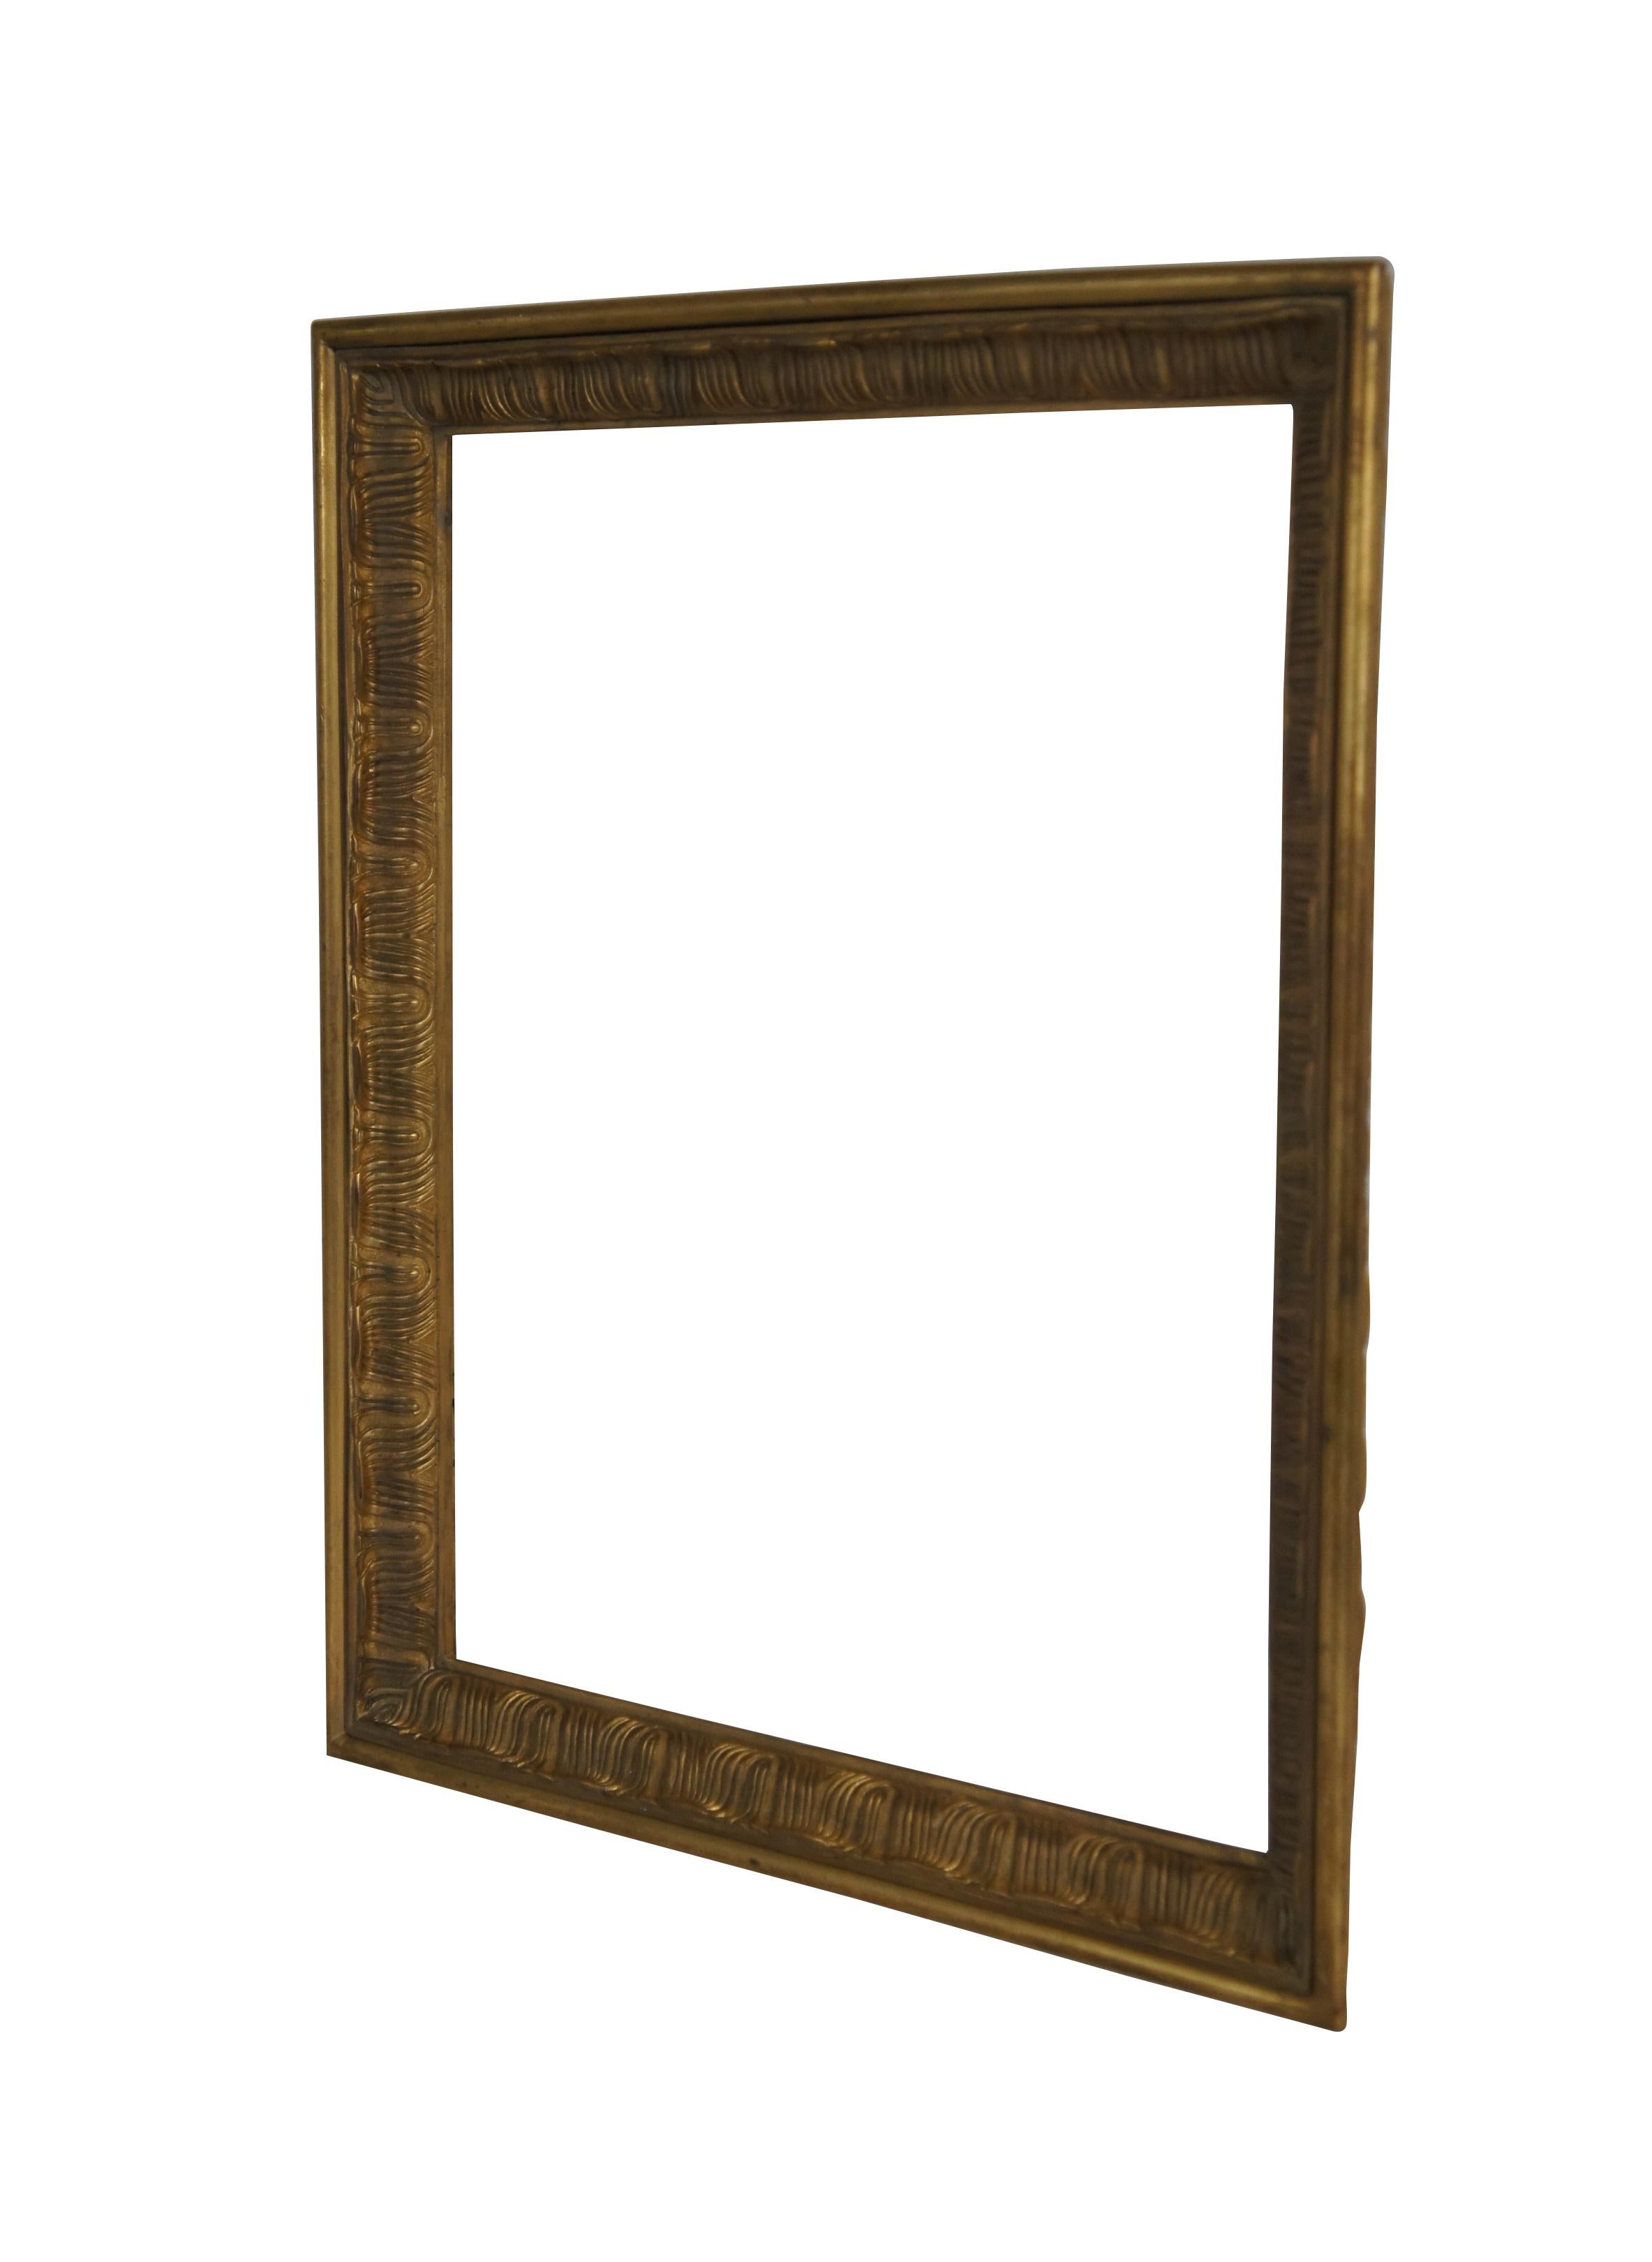 Cadre ancien pour tableau / miroir en bronze doré lourd, moulé pour ressembler à un cadre en bois doré sculpté. Bord biseauté décoré d'un motif gravé d'ondulations festonnées ; visible sur les deux côtés du cadre.

Dimensions :
12,75